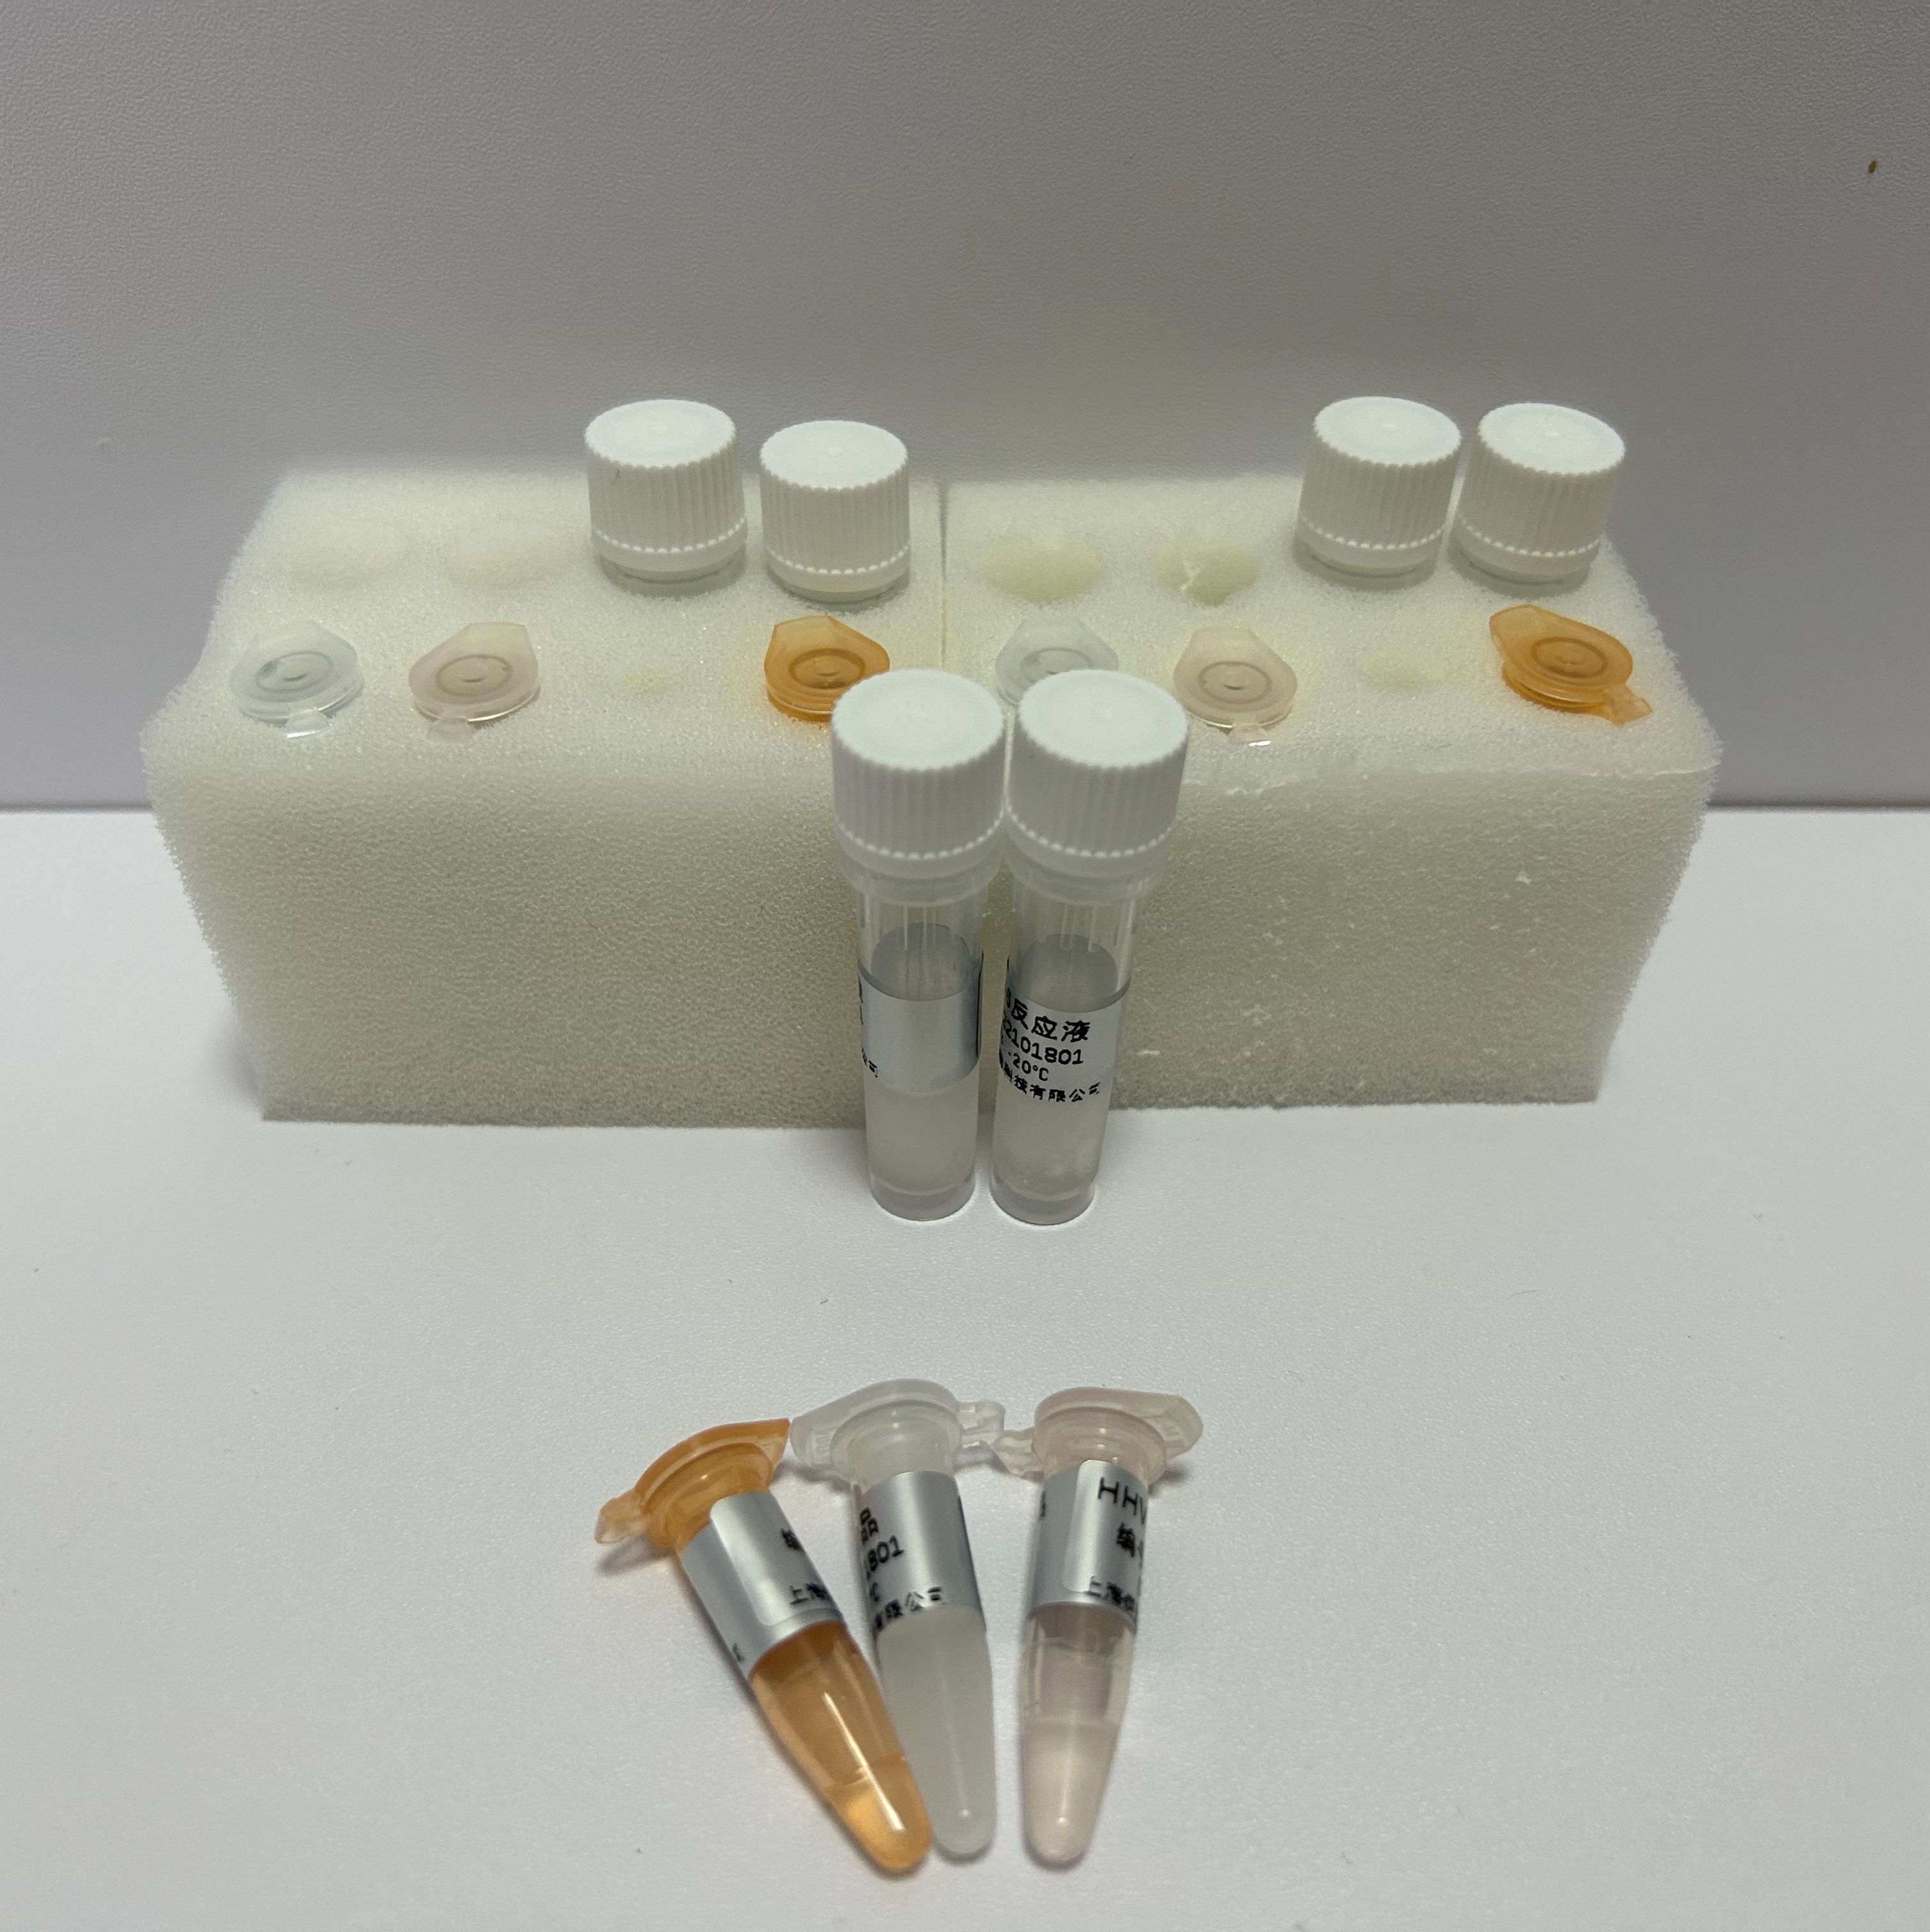 大青叶染料法PCR鉴定试剂盒